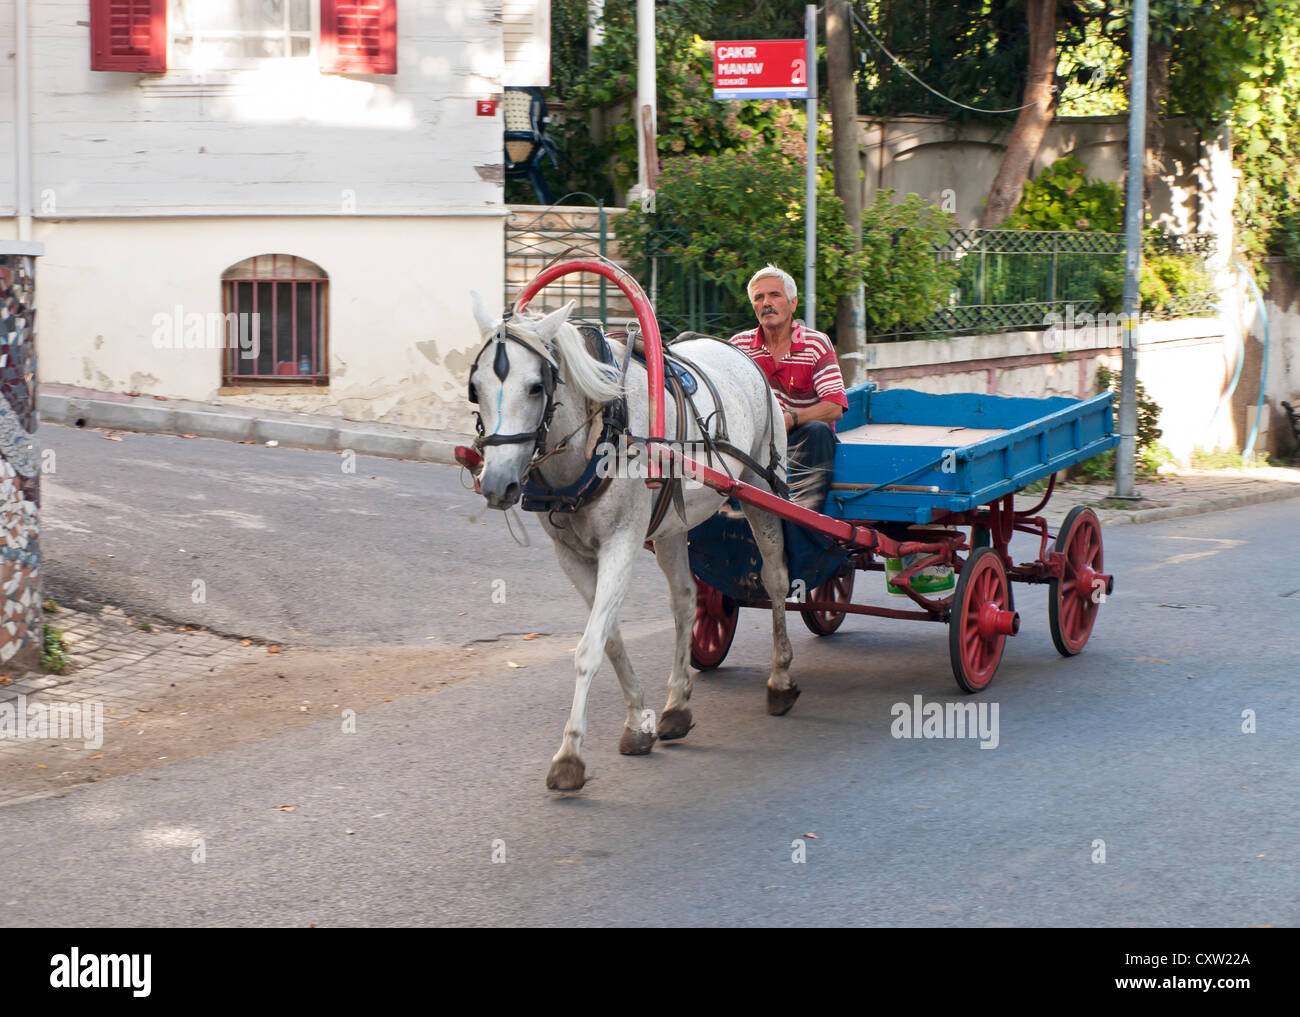 Cavallo e carro / Carrello per trasporto merci a Buyukada Turchia dove le auto non sono ammesse Foto Stock